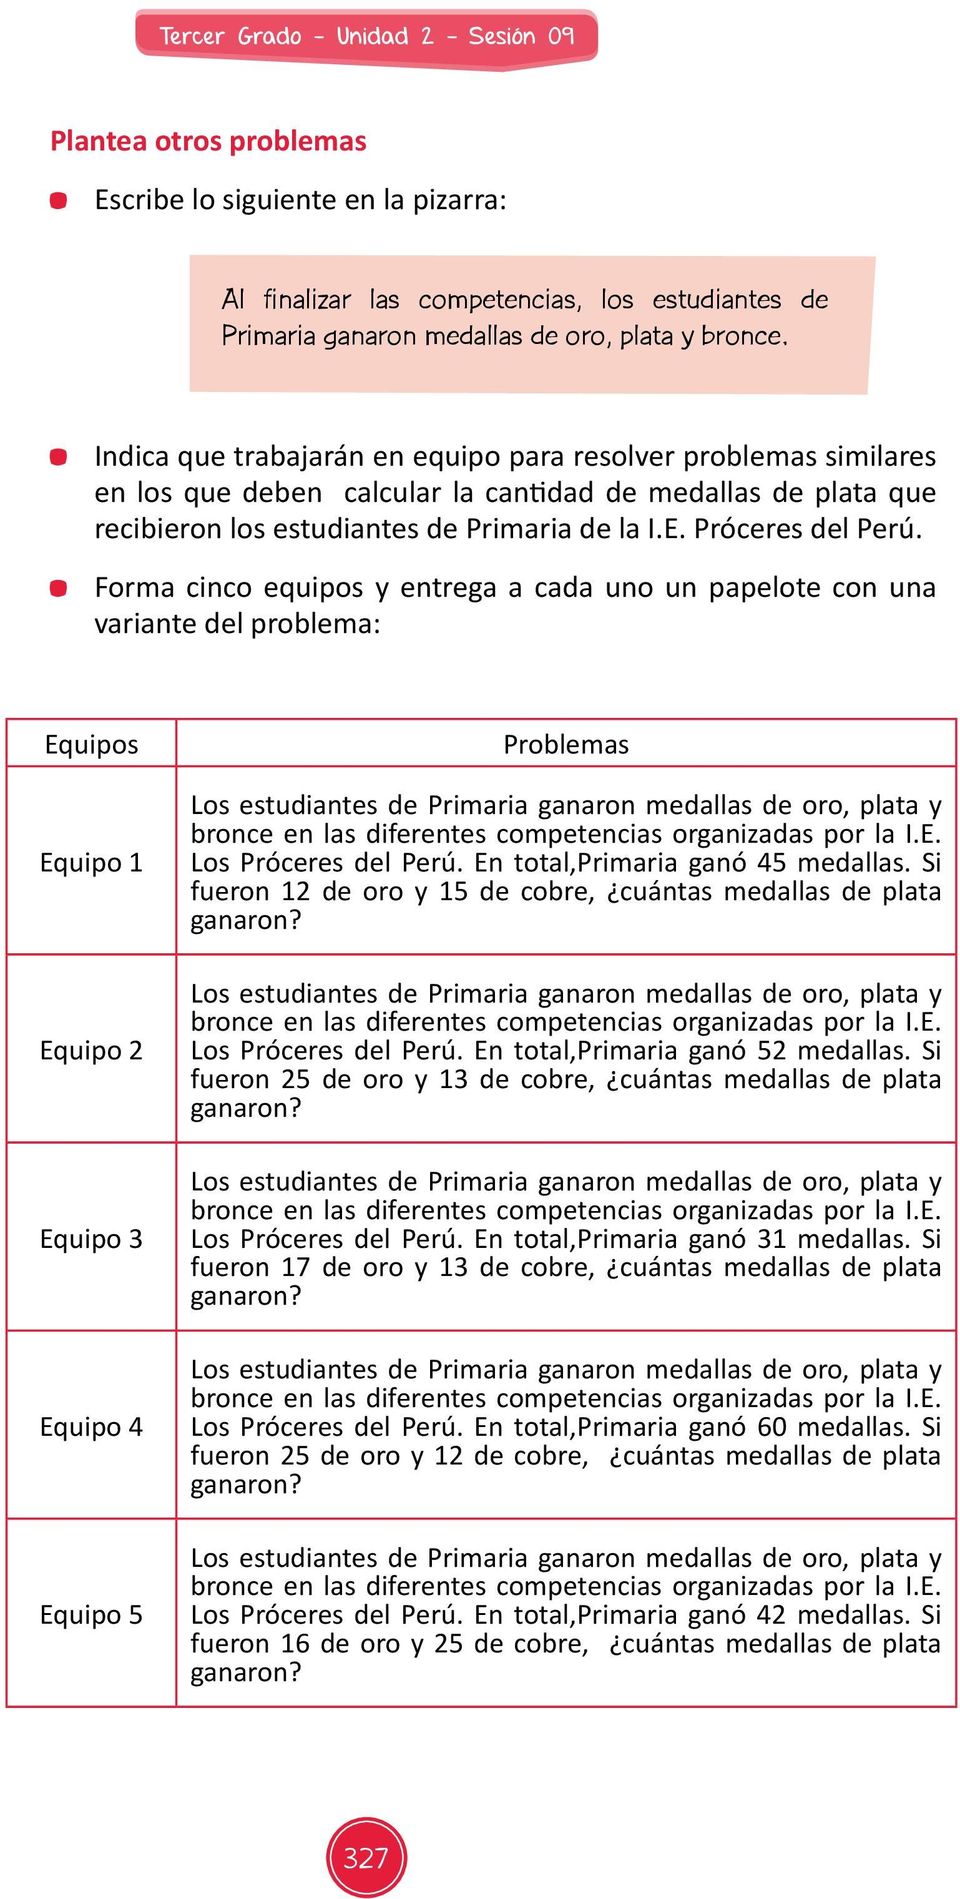 Forma cinco equipos y entrega a cada uno un papelote con una variante del problema: Equipos Equipo 1 Equipo 2 Equipo 3 Equipo 4 Equipo 5 Problemas Los Próceres del Perú.